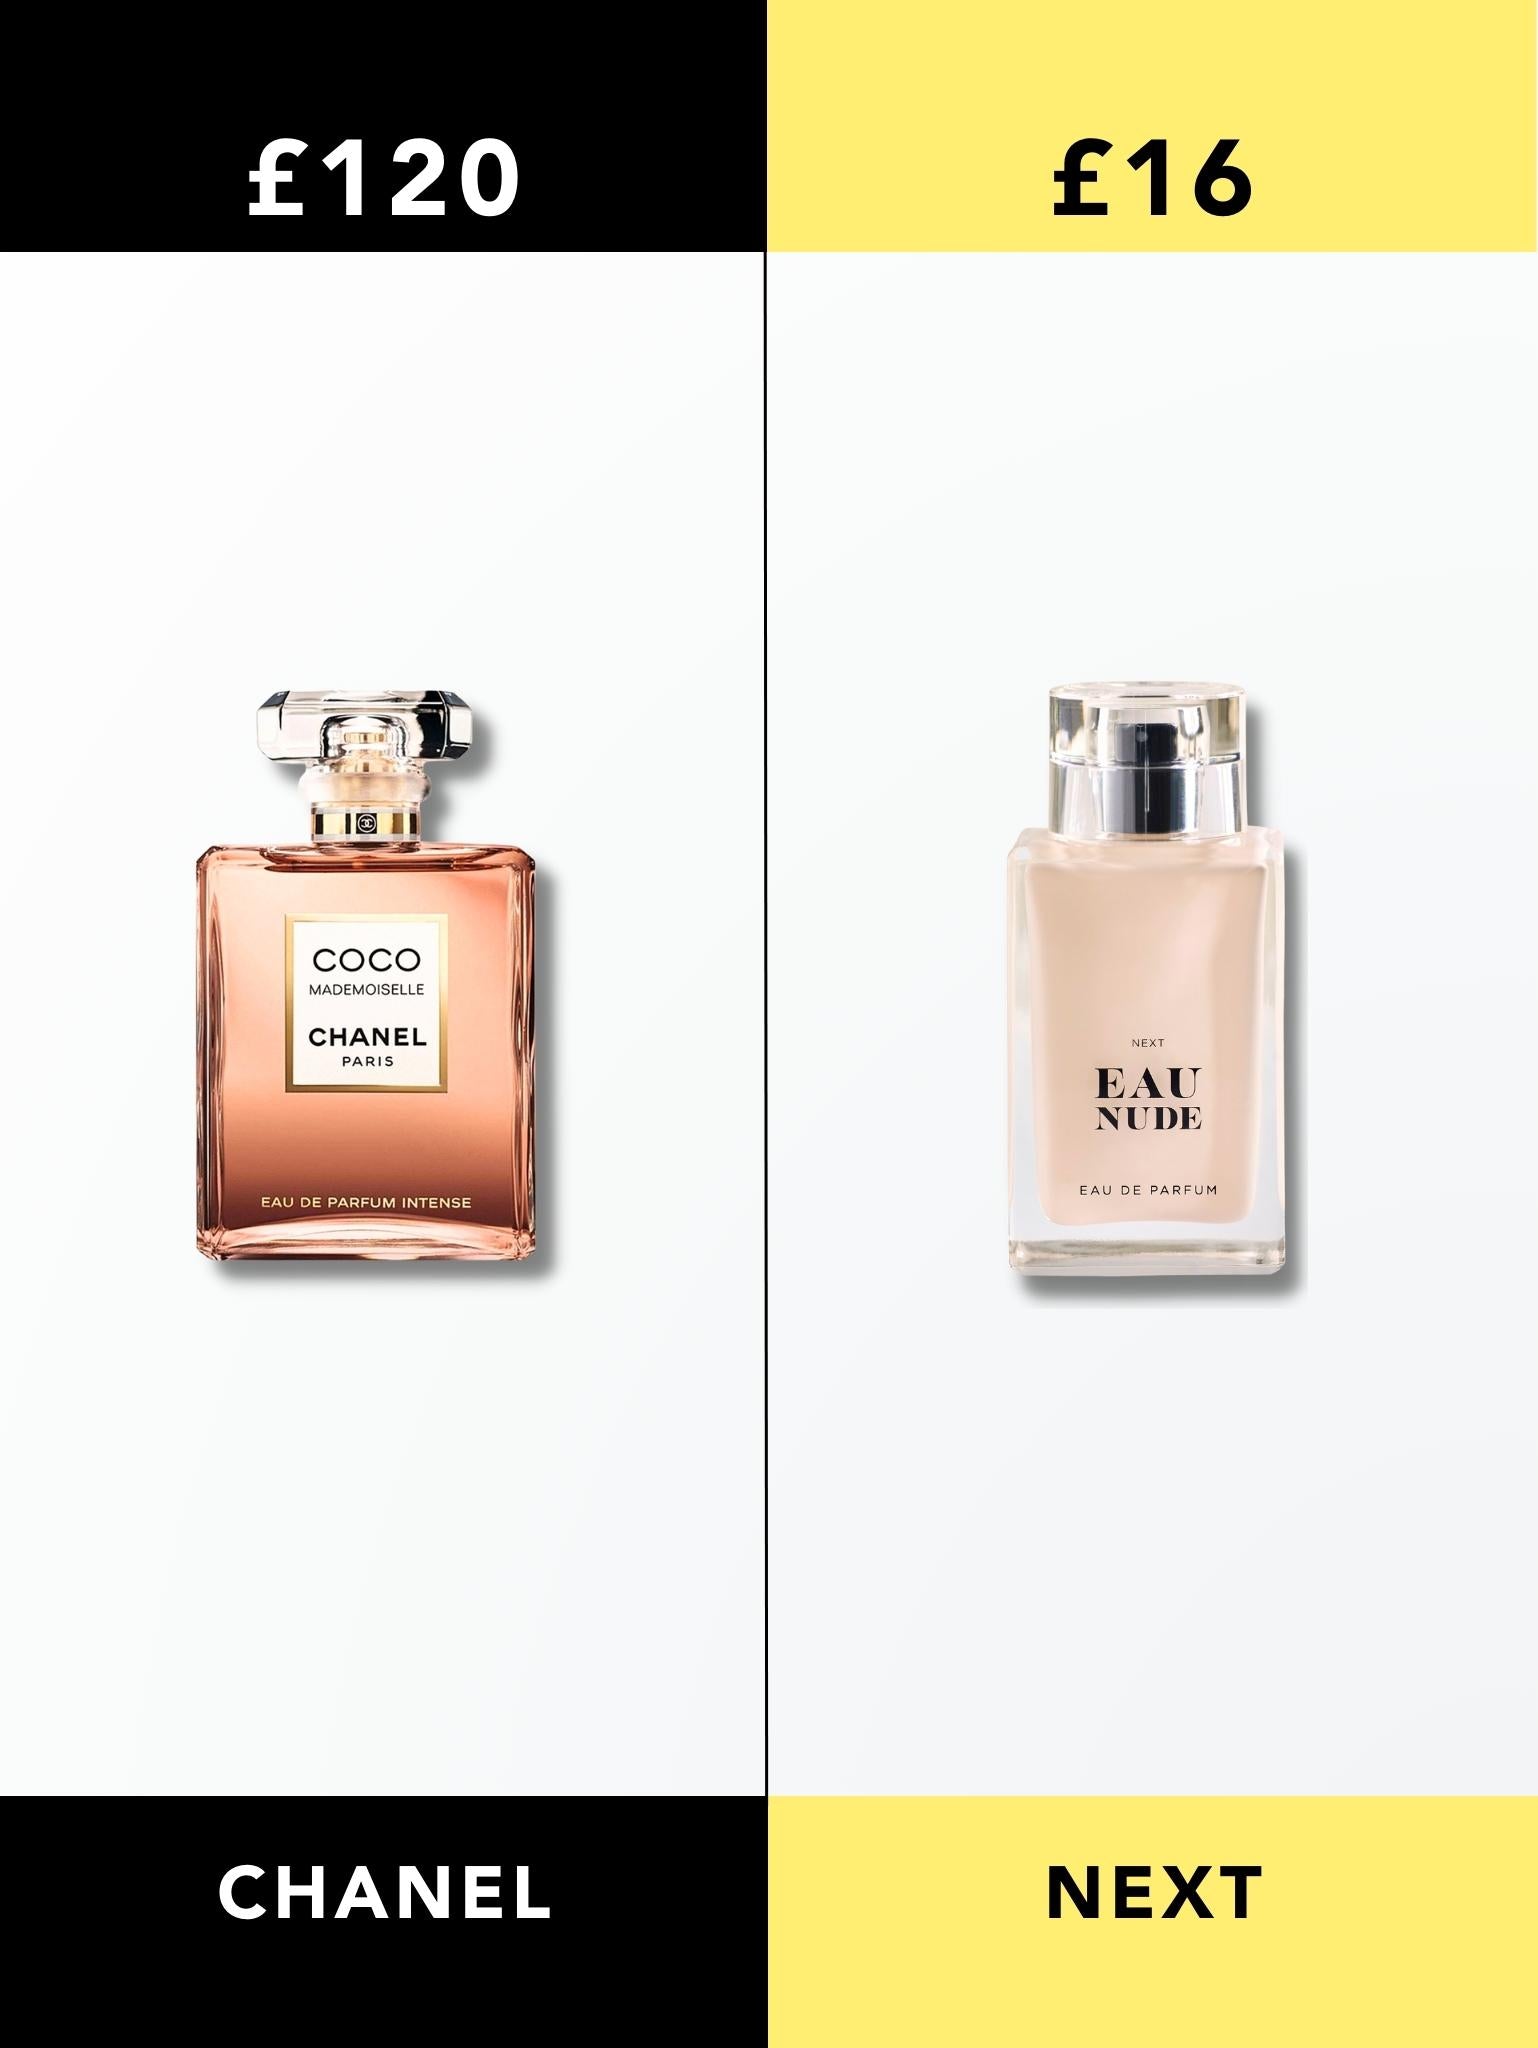 Chanel Mademoiselle vs Next Eau Nude Perfume